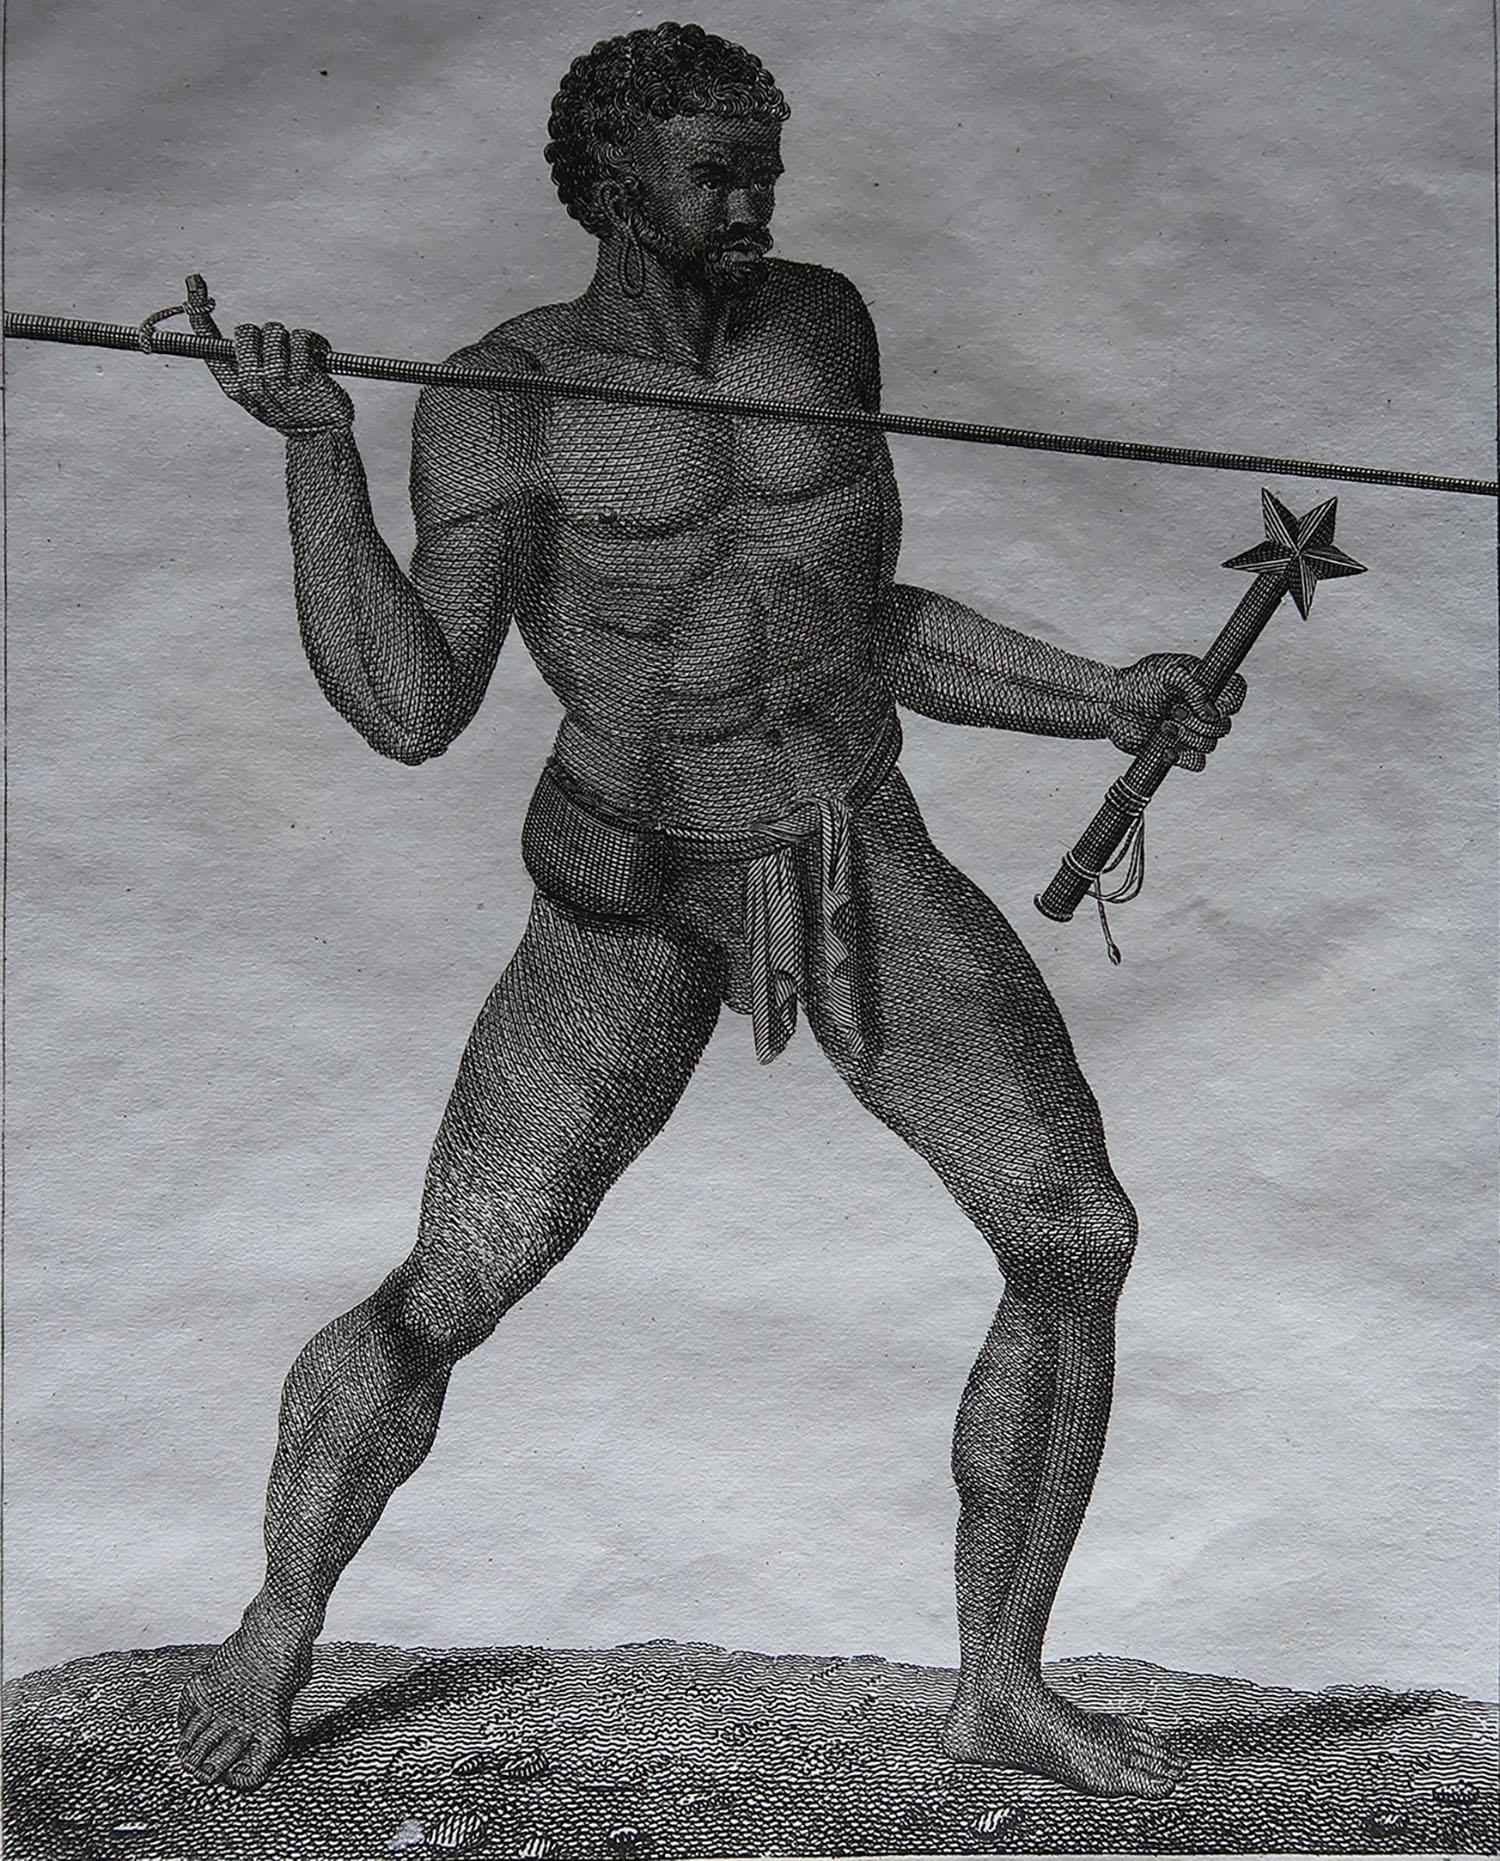 Merveilleux tirage ethnographique. Montrer un guerrier de Nouvelle-Calédonie

Gravure sur cuivre. Artiste inconnu.

Publié par Mackenzie et Dent. 1817

Non encadré.


  



  


 